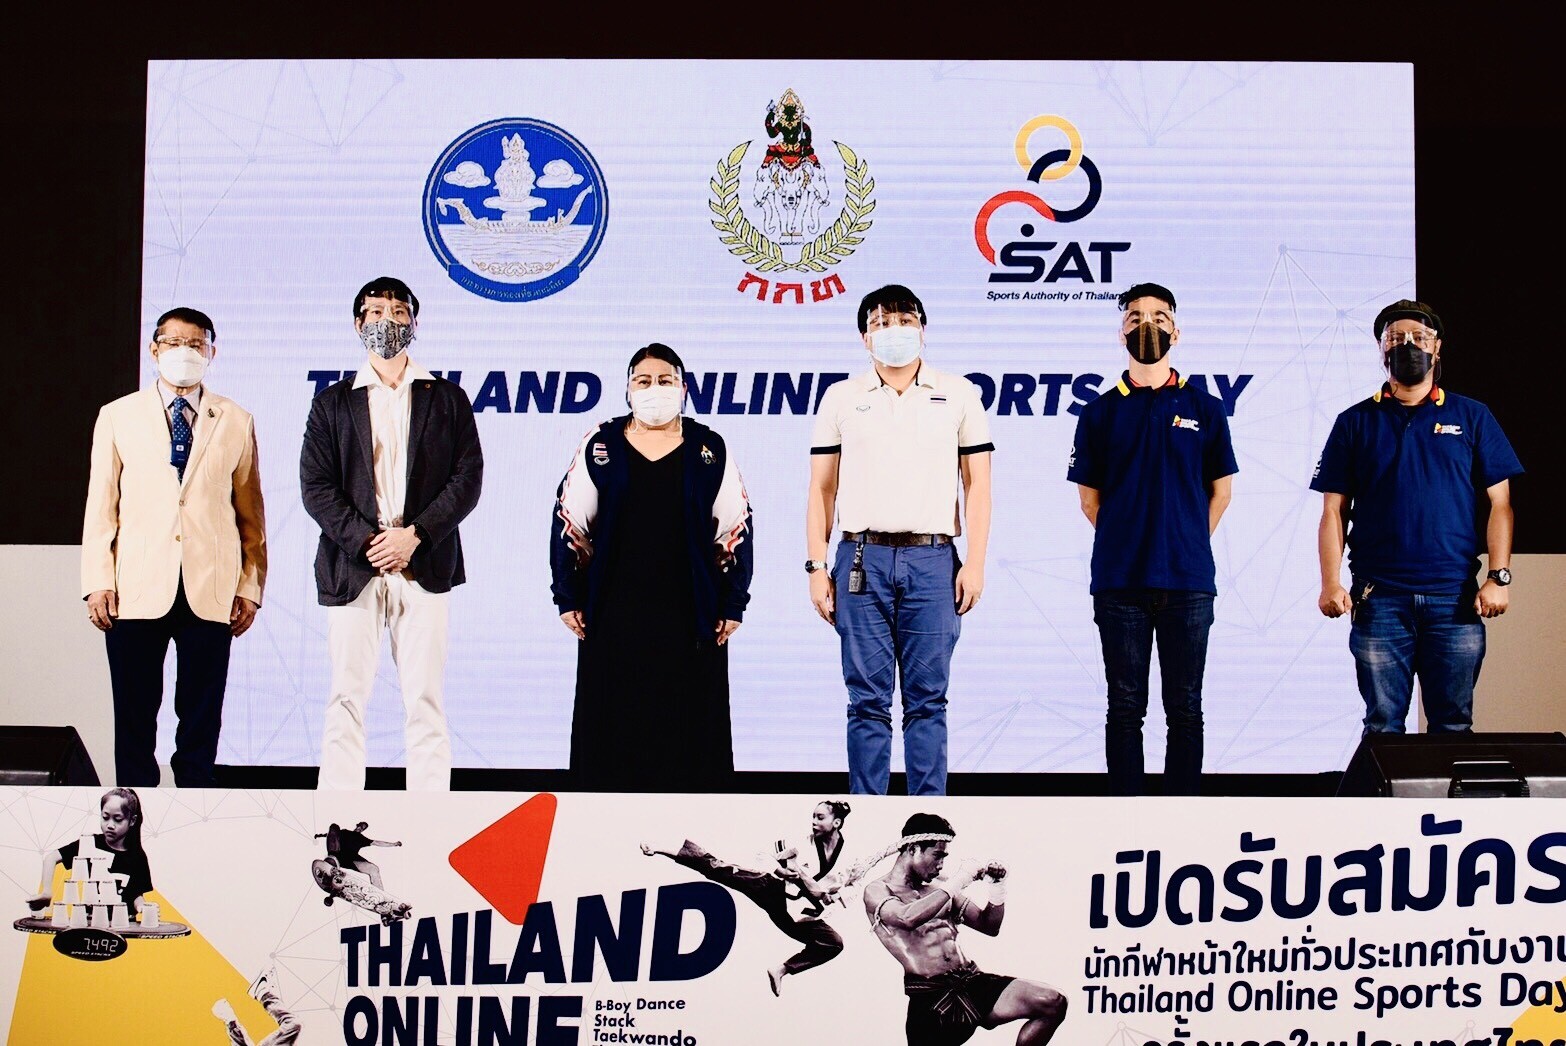 การกีฬาแห่งประเทศไทย จัดกิจกรรม "Thailand Online Sports Day" ชวนคนไทยส่งคลิปแข่งขันกีฬา ชิงรางวัลรวม 152,000 บาท